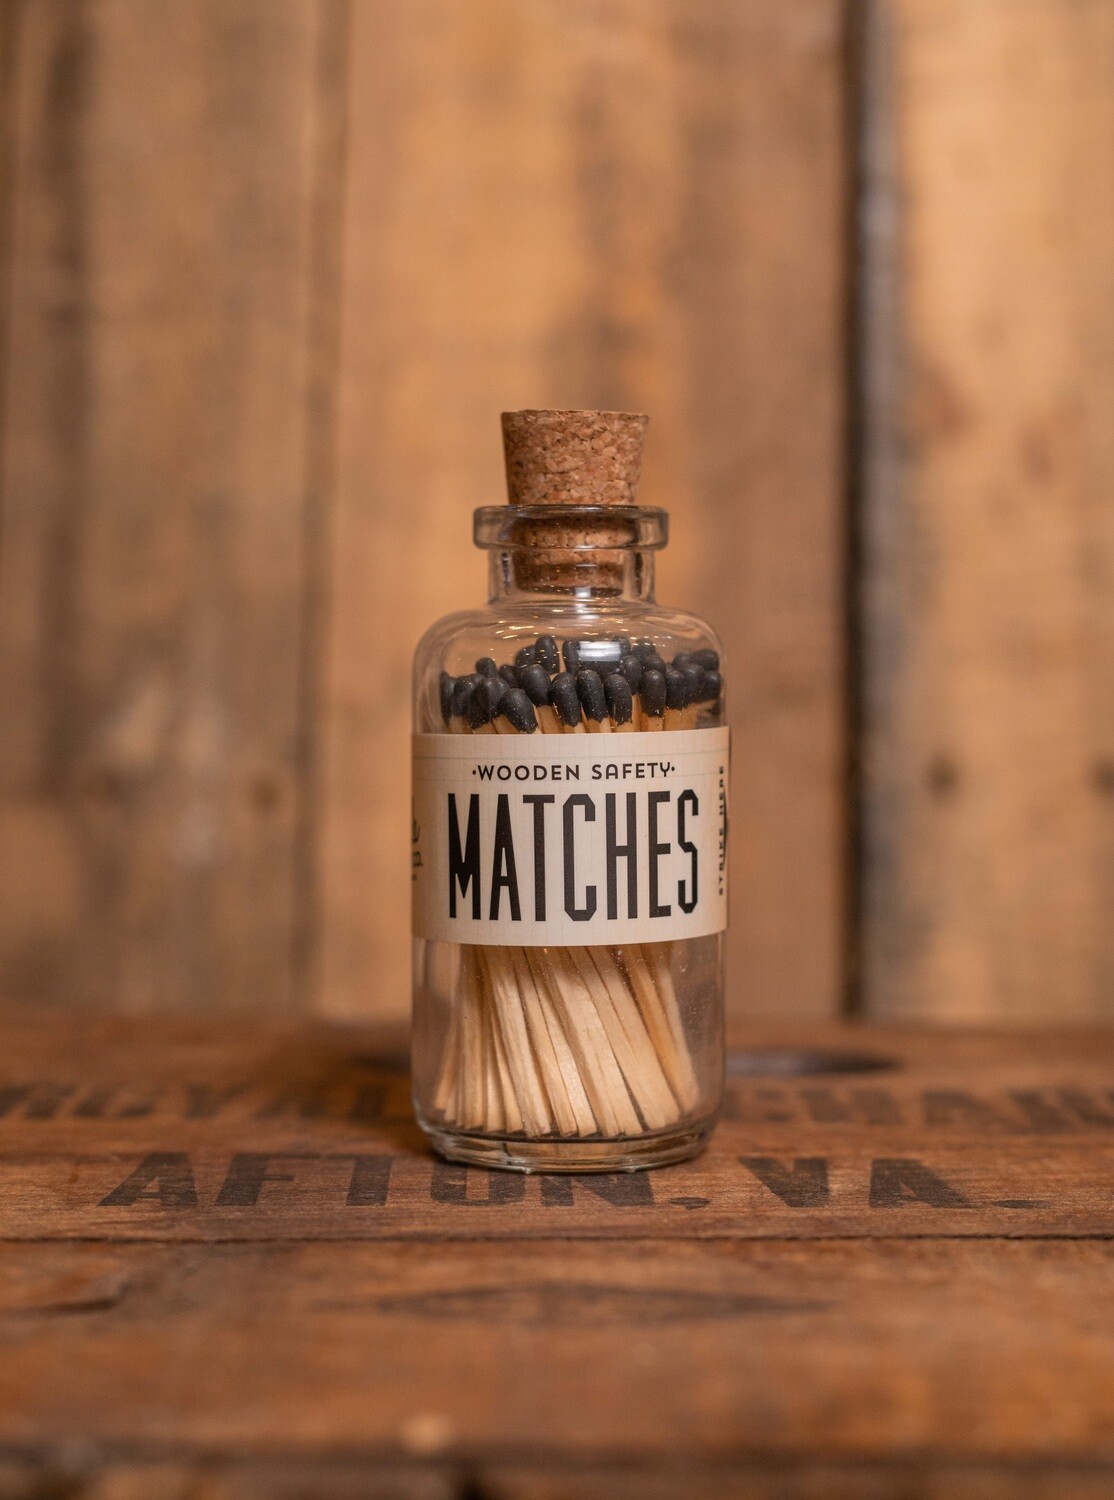 Black Mini Matches